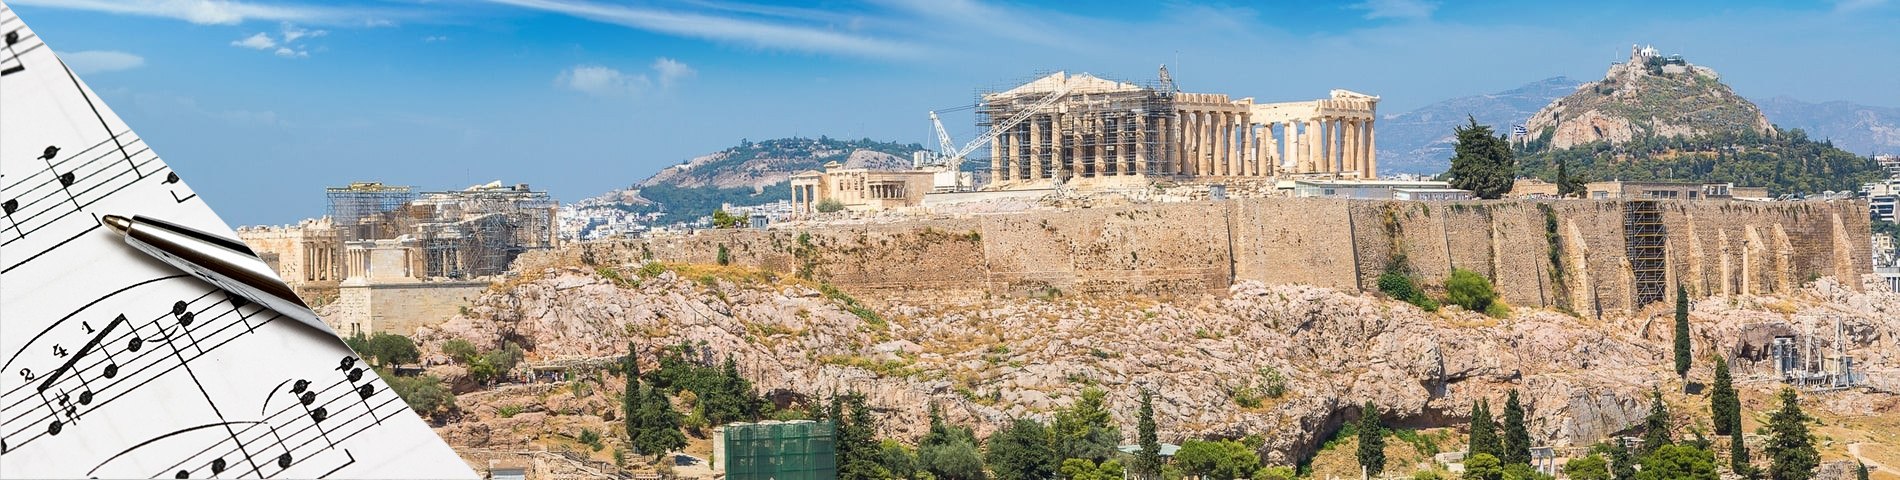 雅典 - 希腊语和音乐